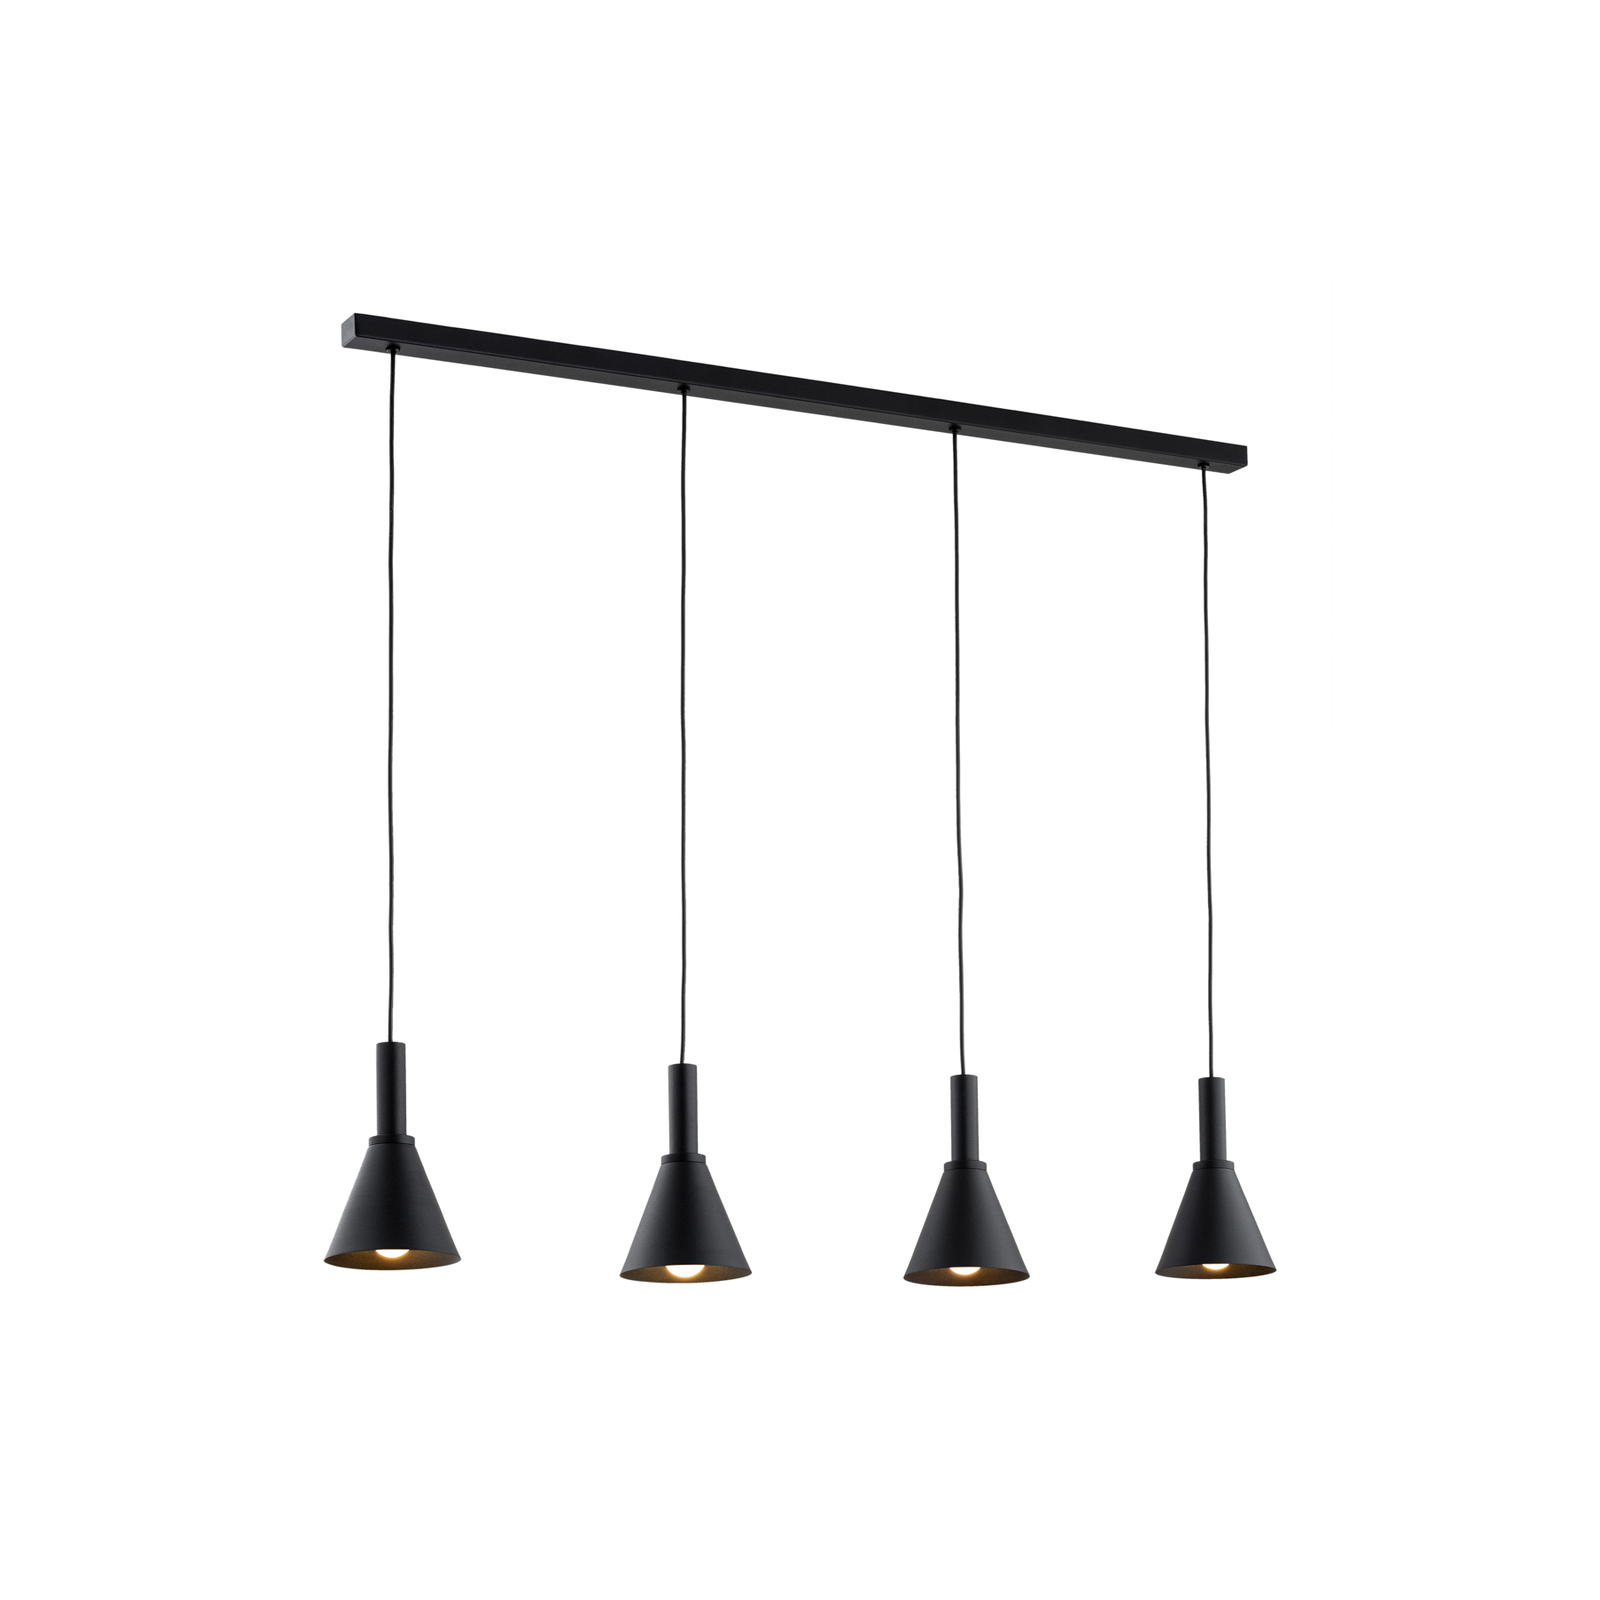 Hanglamp Norte, zwart, staal, lengte 114 cm, 4-lamps